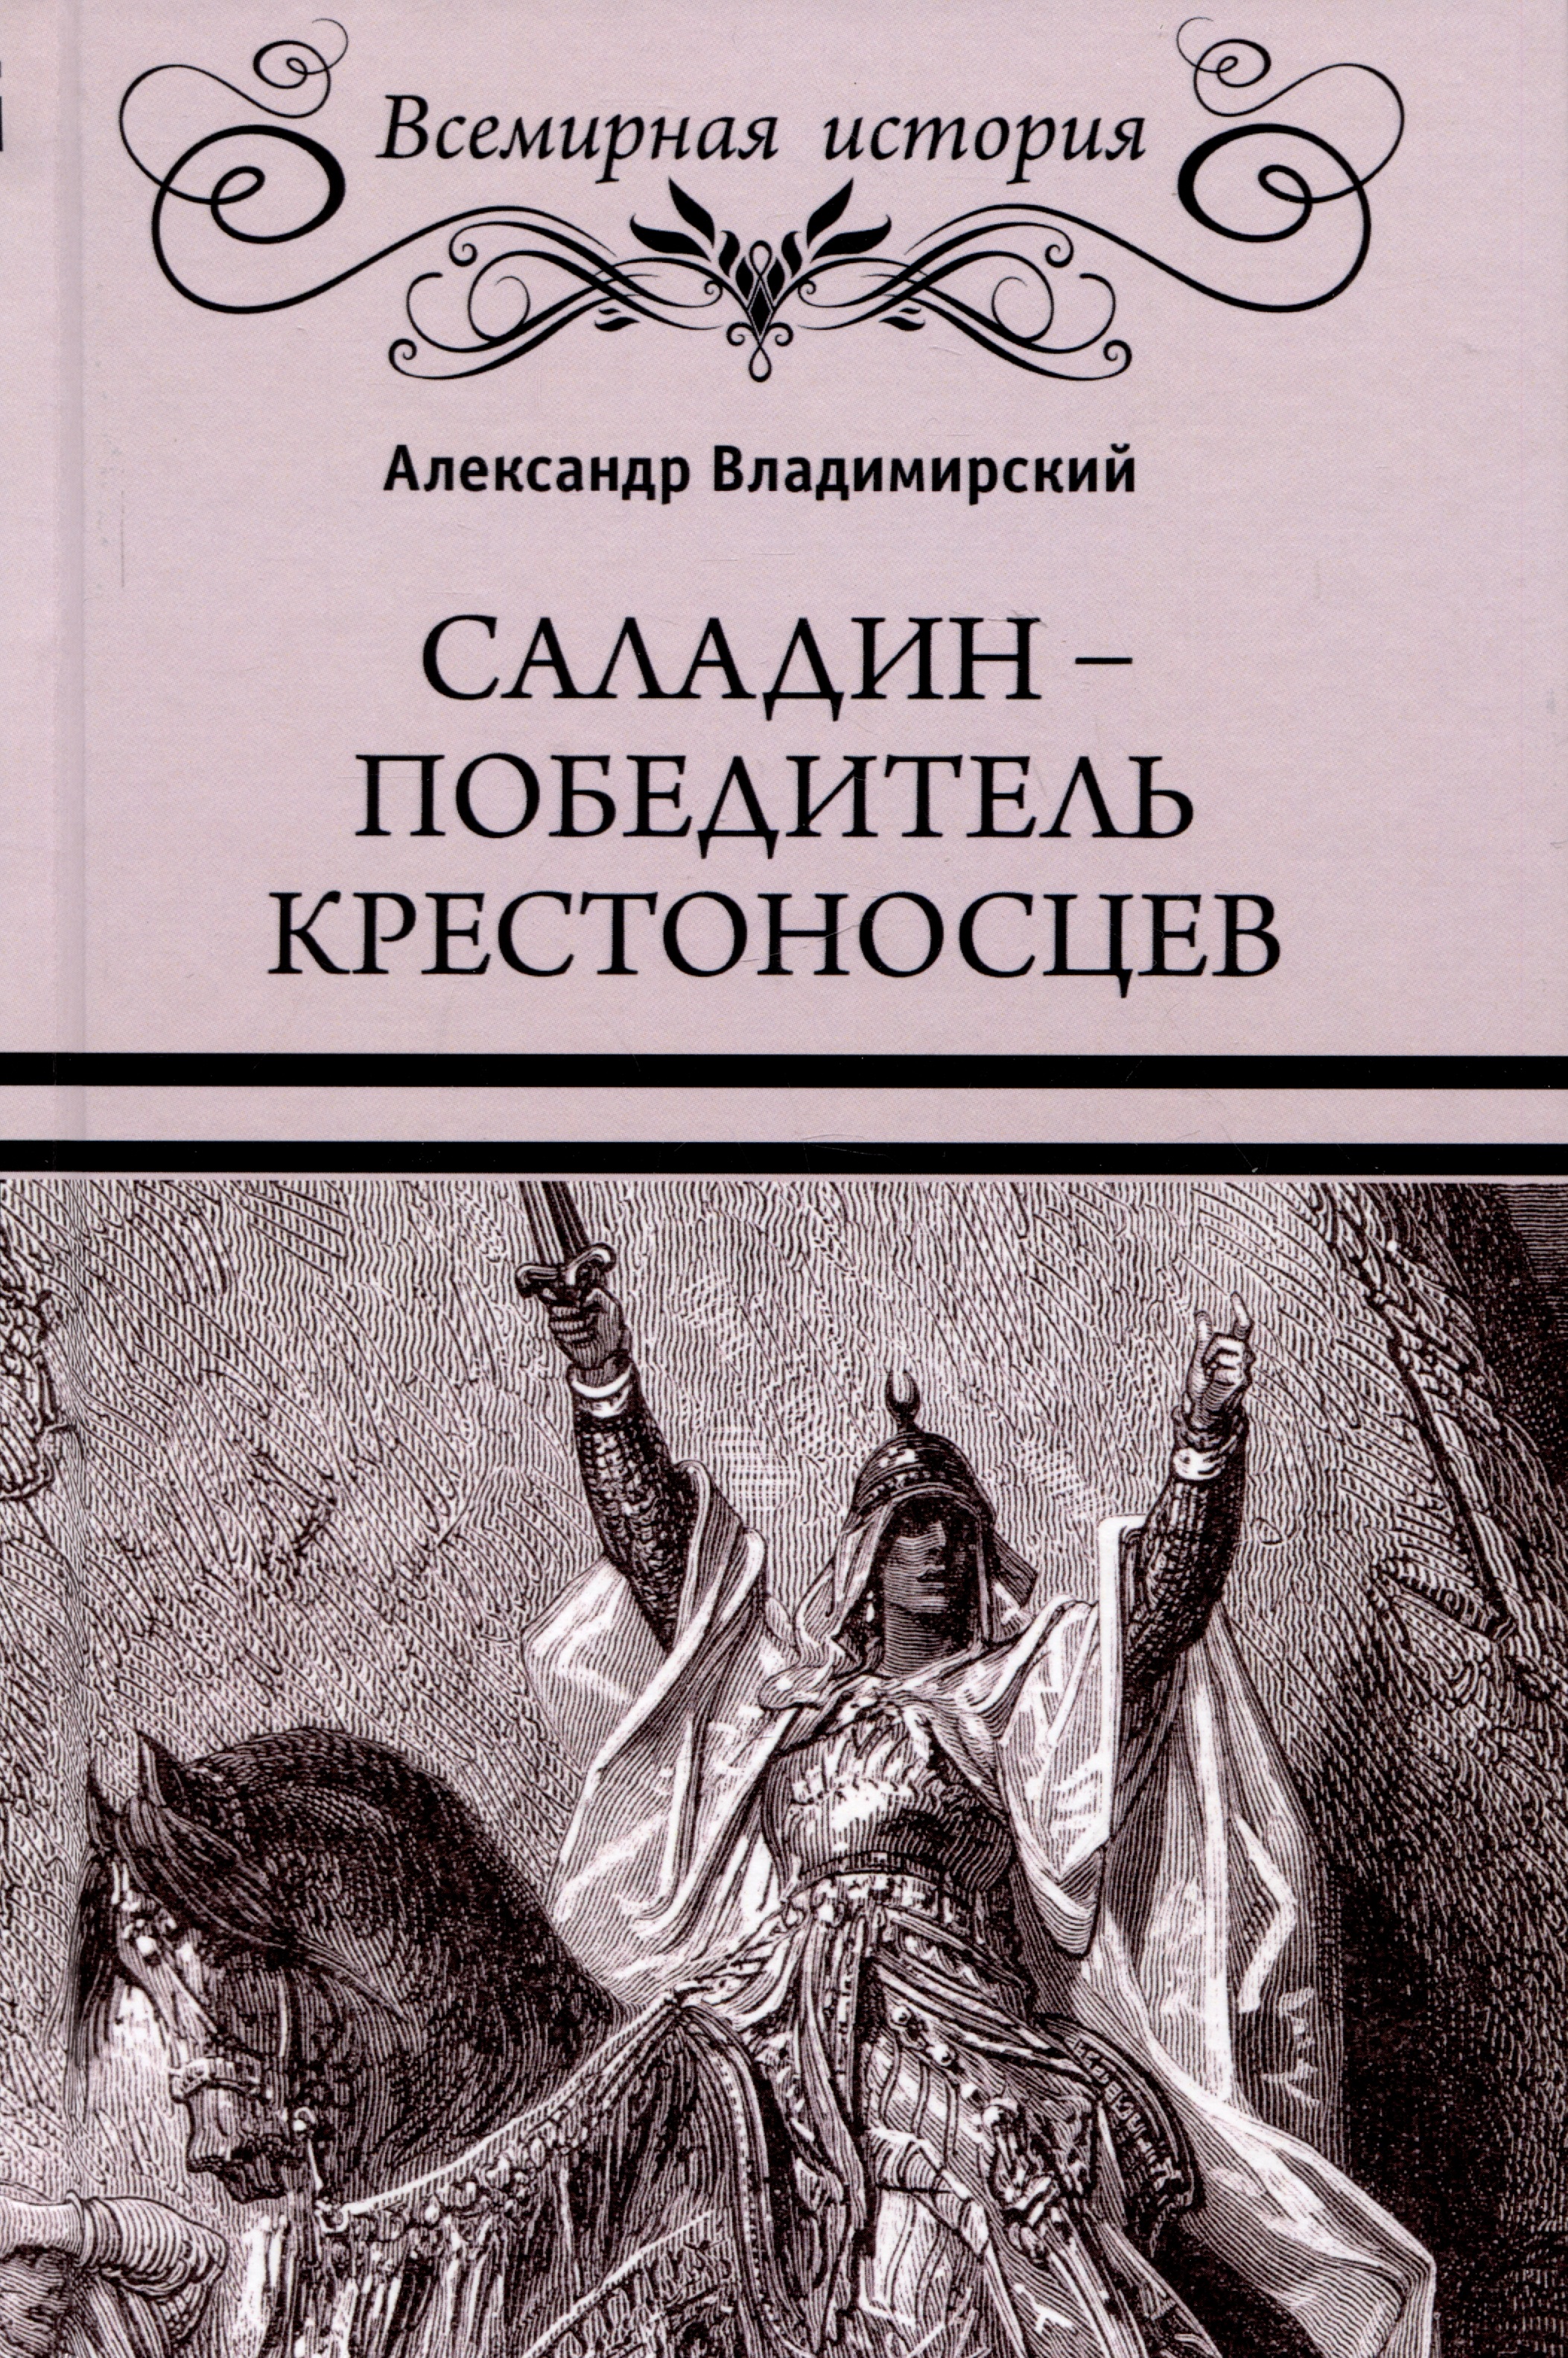 саладин орлиное царство хайт джек Владимирский Александр Владимирович Саладин - победитель крестоносцев